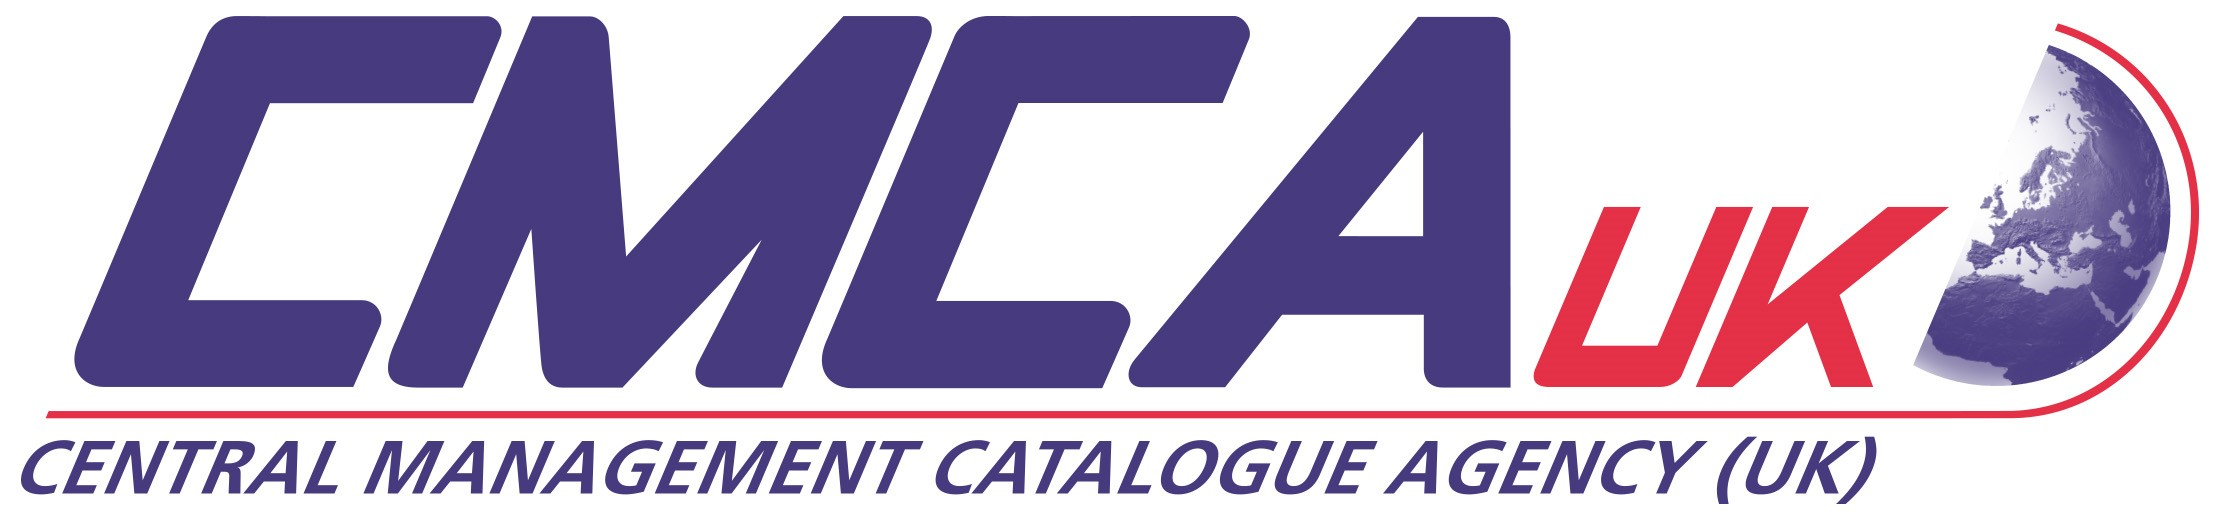 CMCA(UK) Ltd